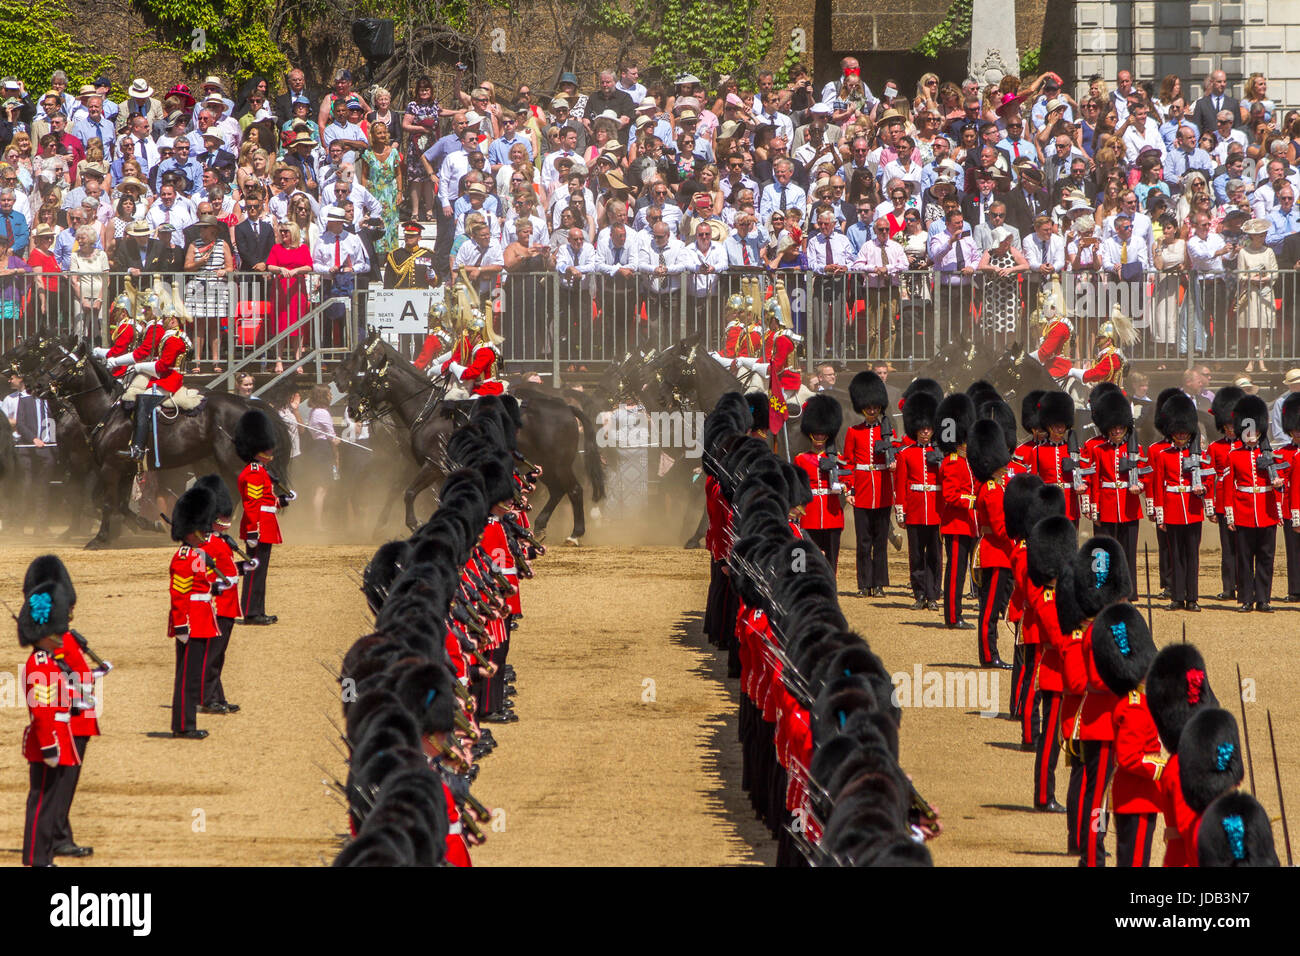 Des soldats des gardes irlandais défilent en formation à Horse Guards Parade, à Trooping the Color, Londres, Royaume-Uni, 2017 Banque D'Images